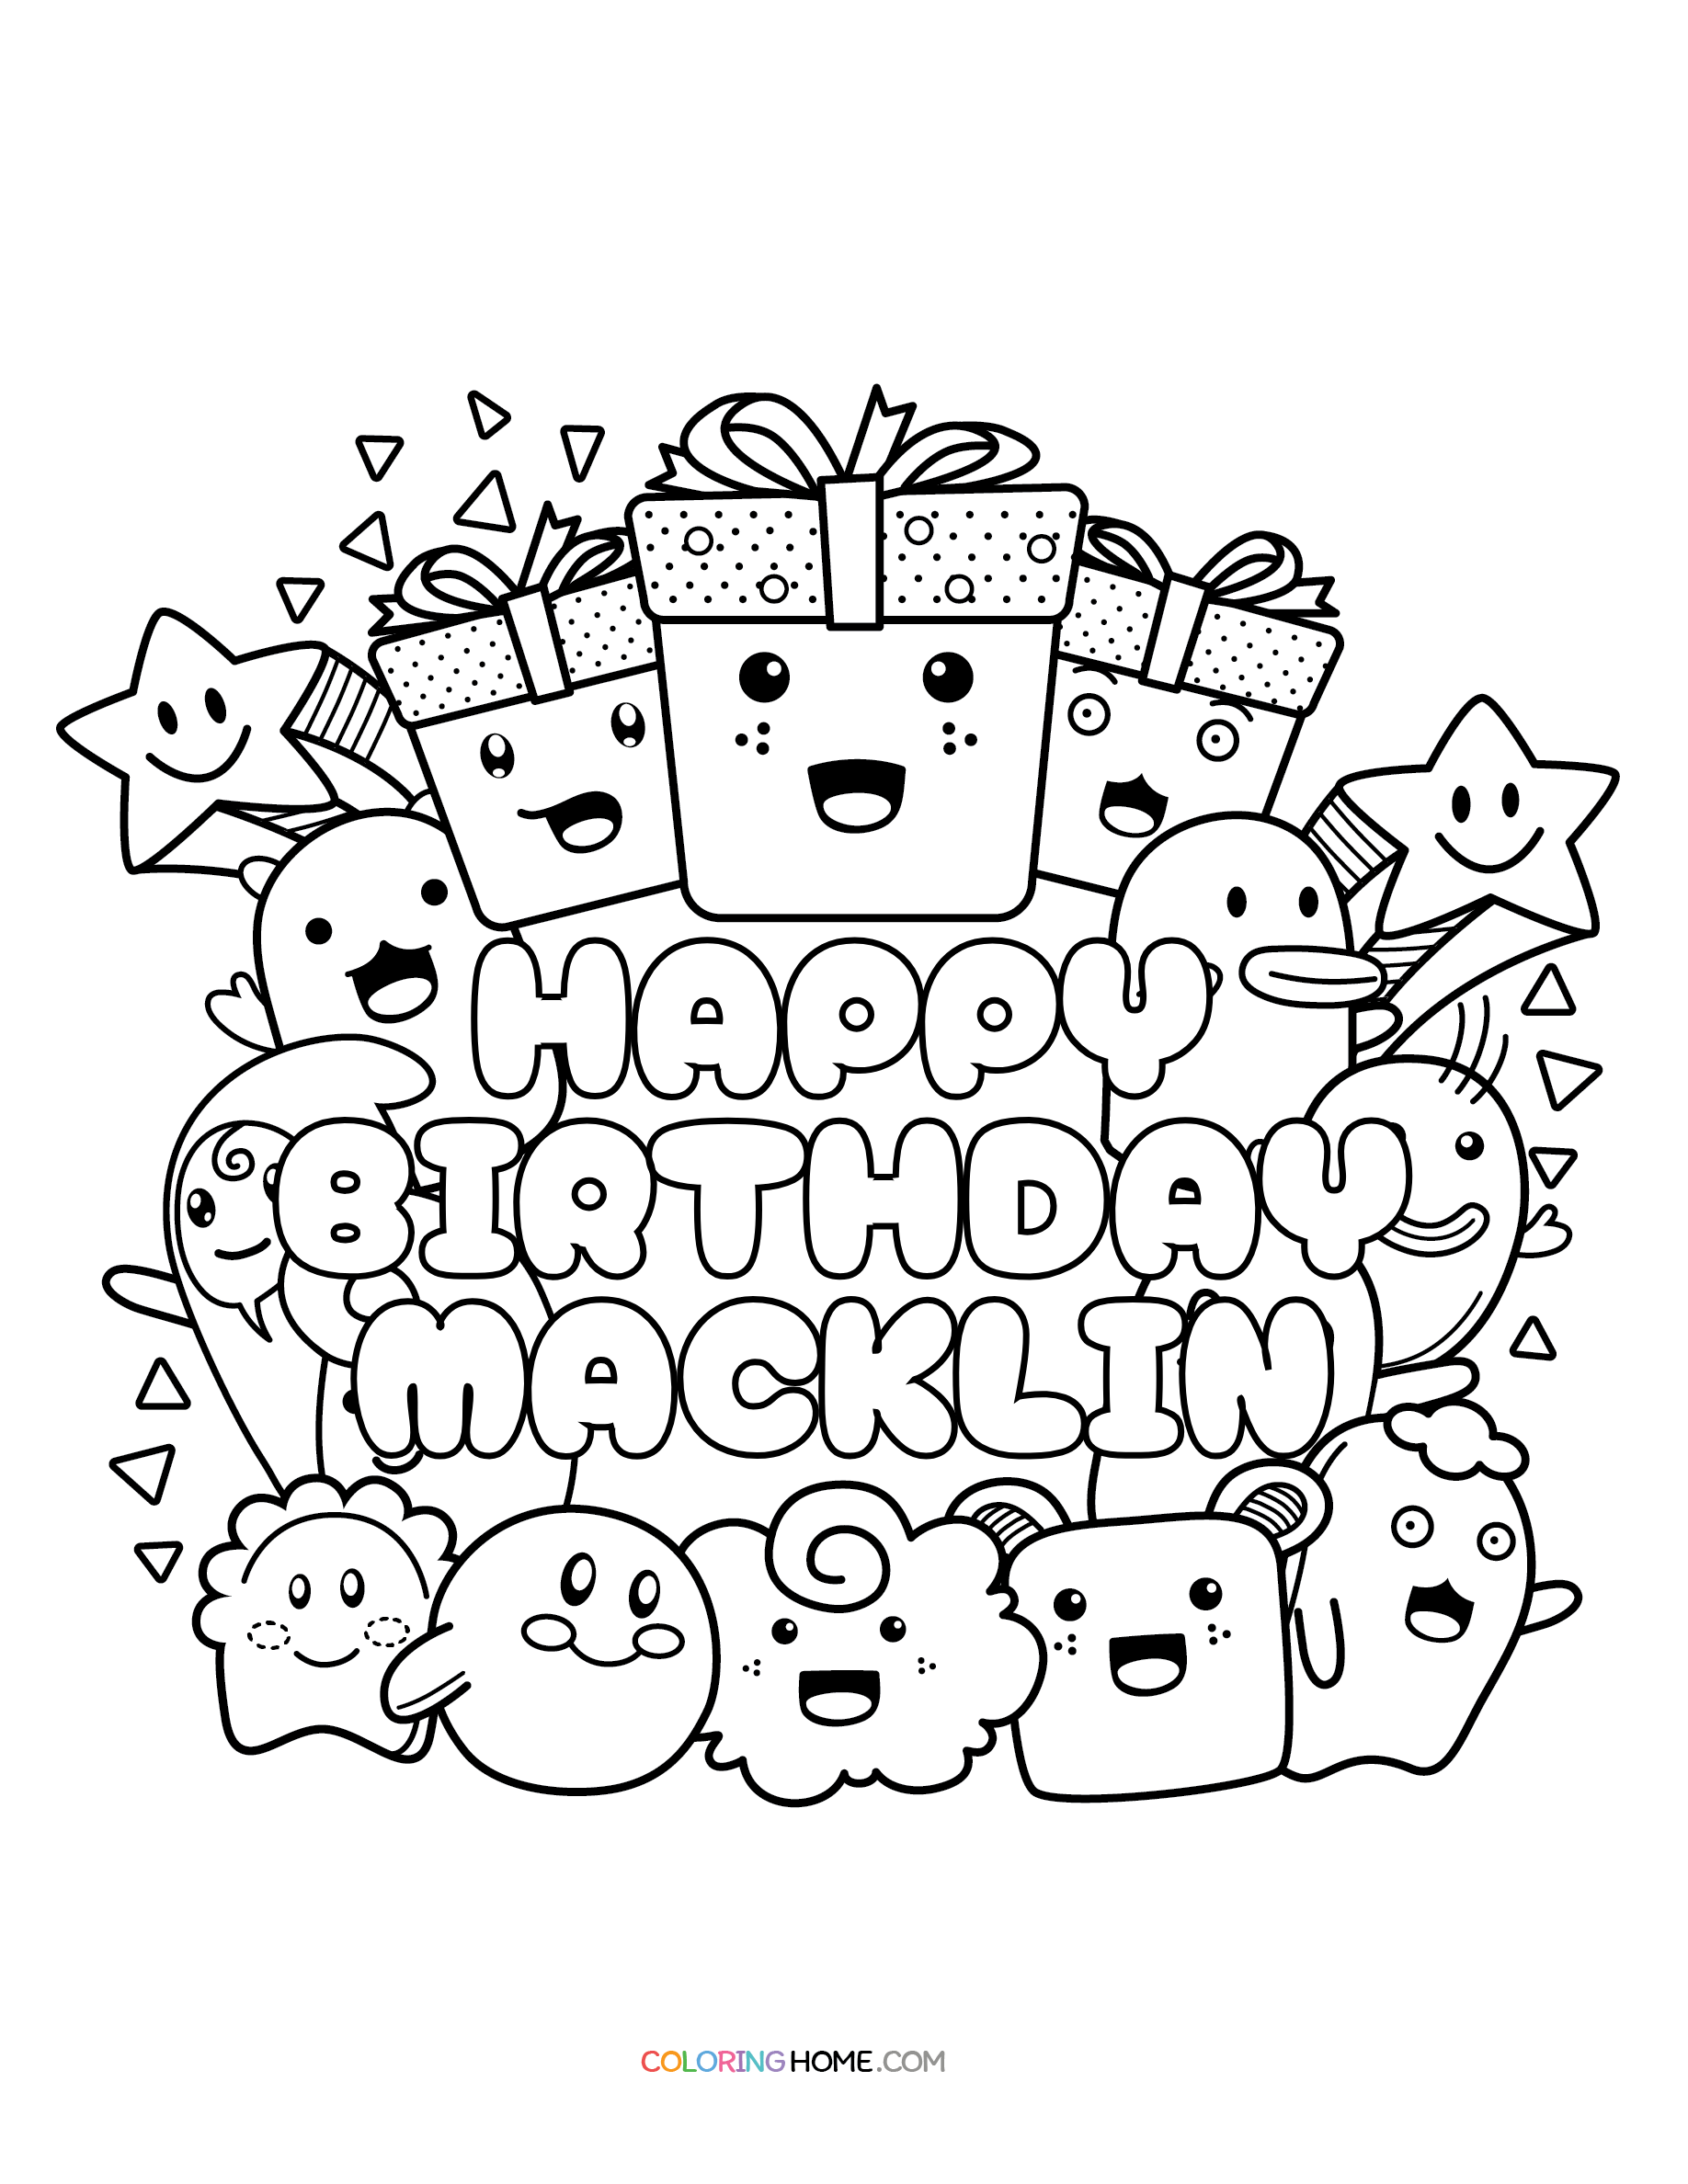 Happy Birthday Macklin coloring page